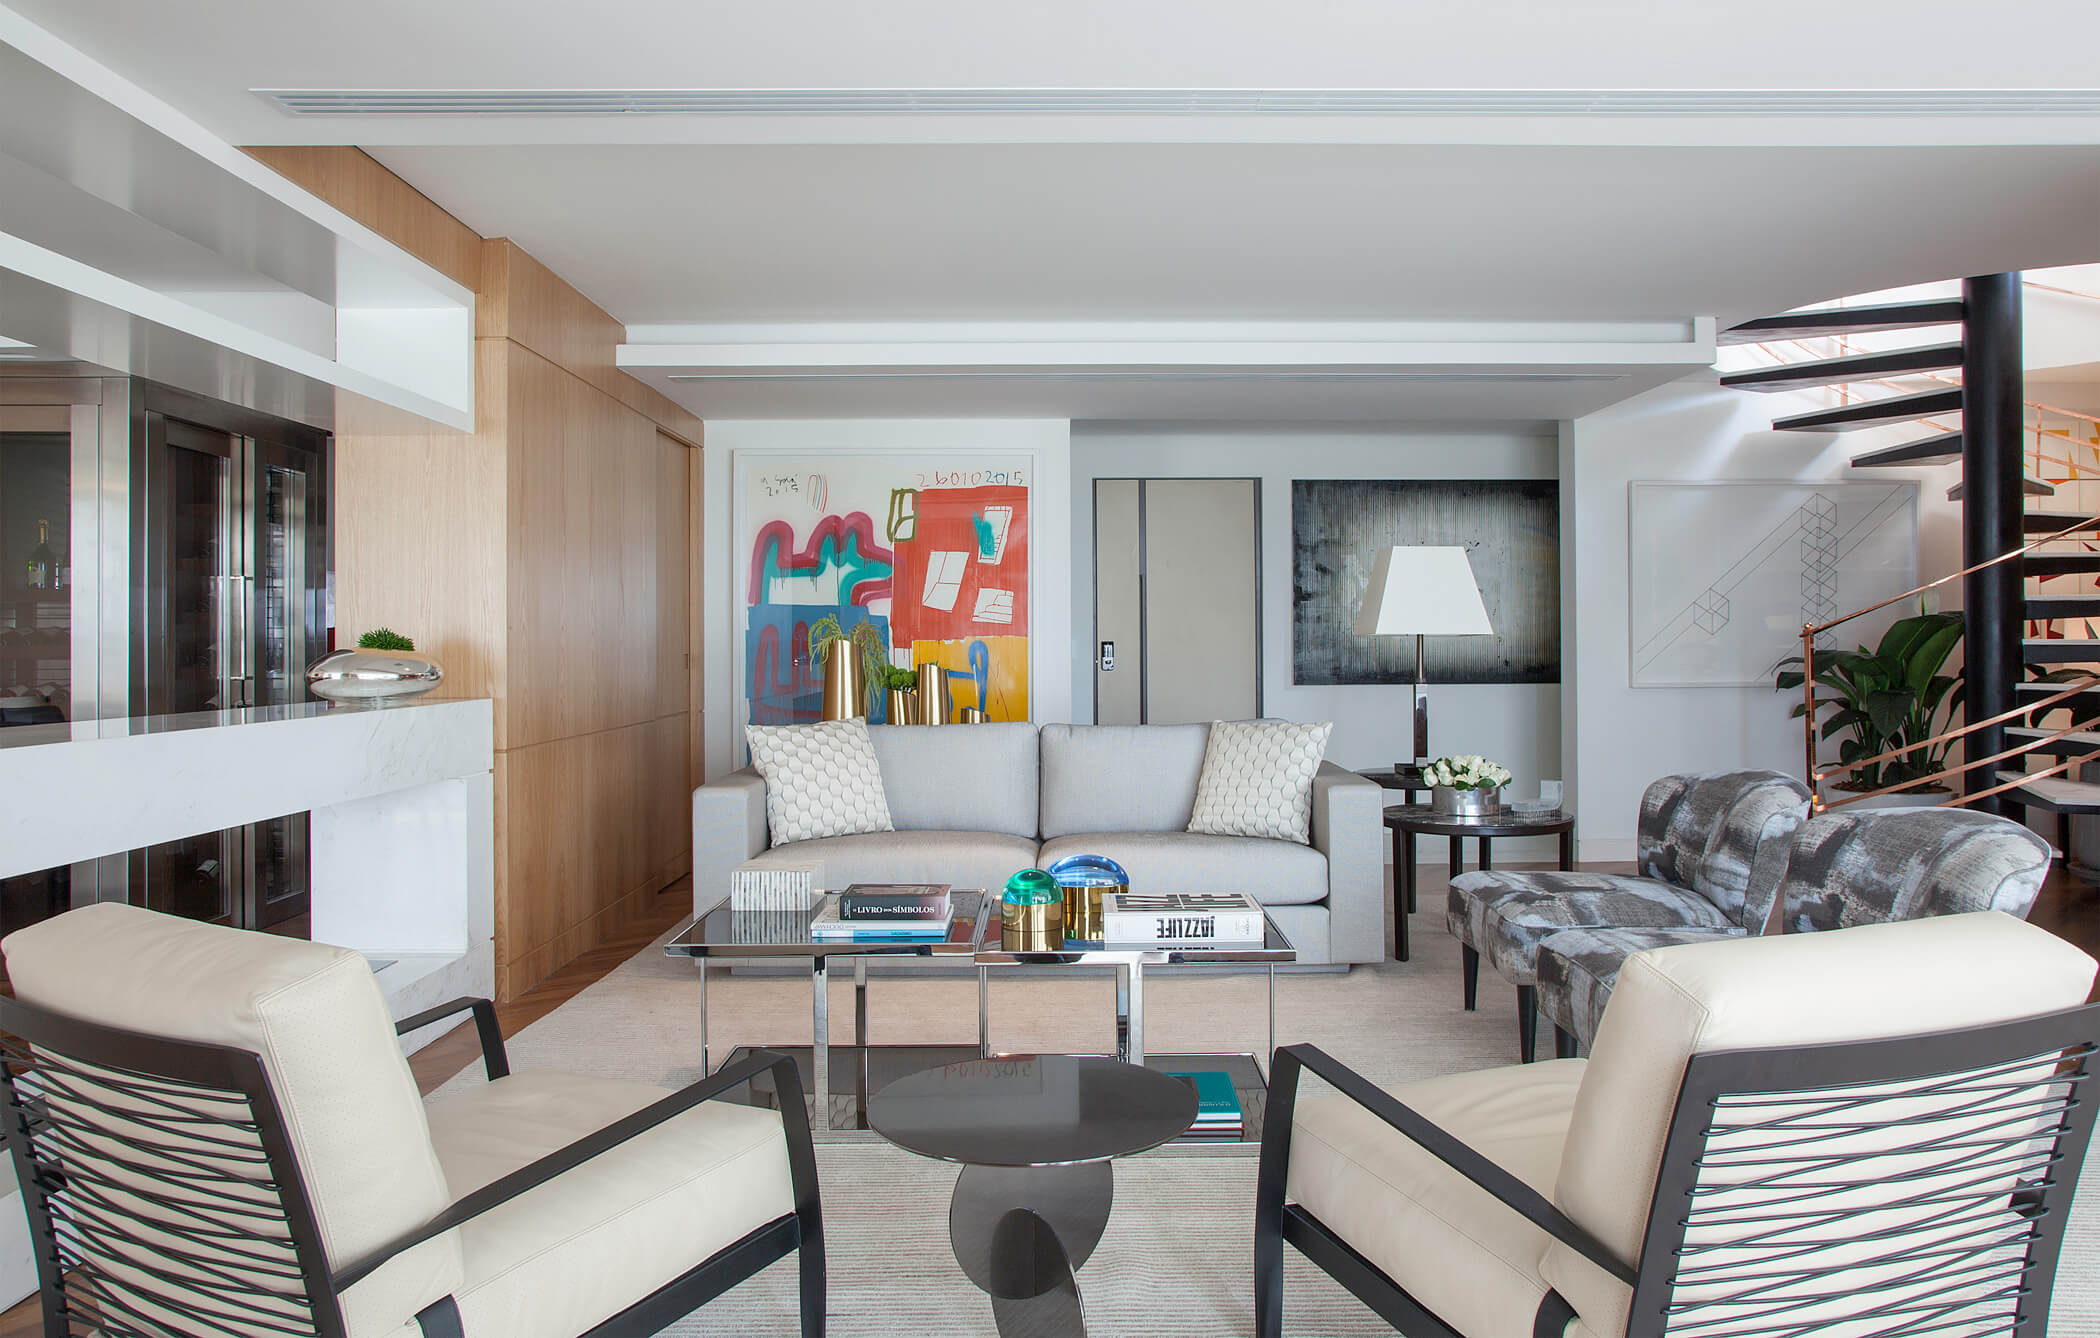 Sala de Jantar e Living - Projeto de Arquitetura e Decoração Residencial